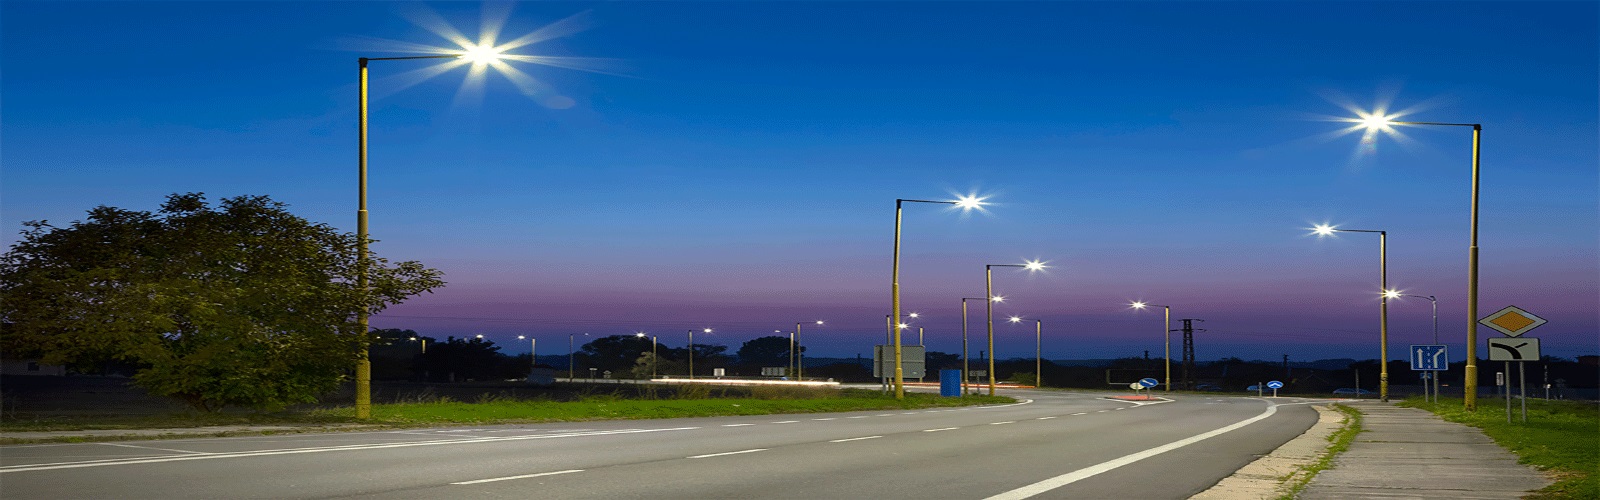 پایه چراغ خیابانی به صورت پایه روشنایی 6 متری، 9 و 12 متری تولید می شود قیمت پایه های روشنایی بر اساس نوع پوشش آن (پایه گالوانیزه، پایه آلمینیومی) متغیراست